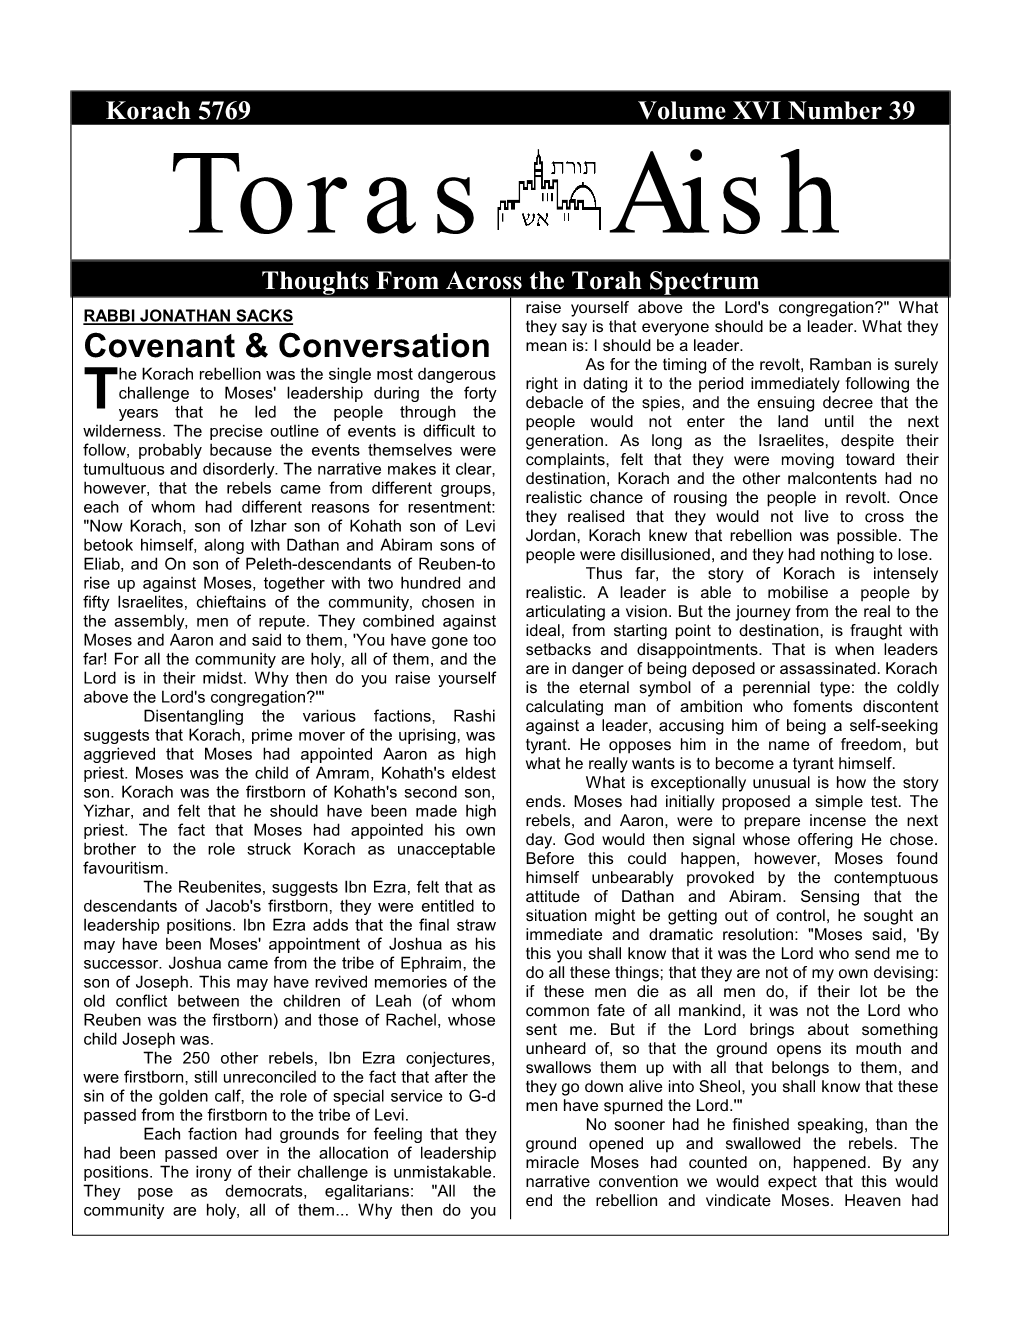 Covenant & Conversation